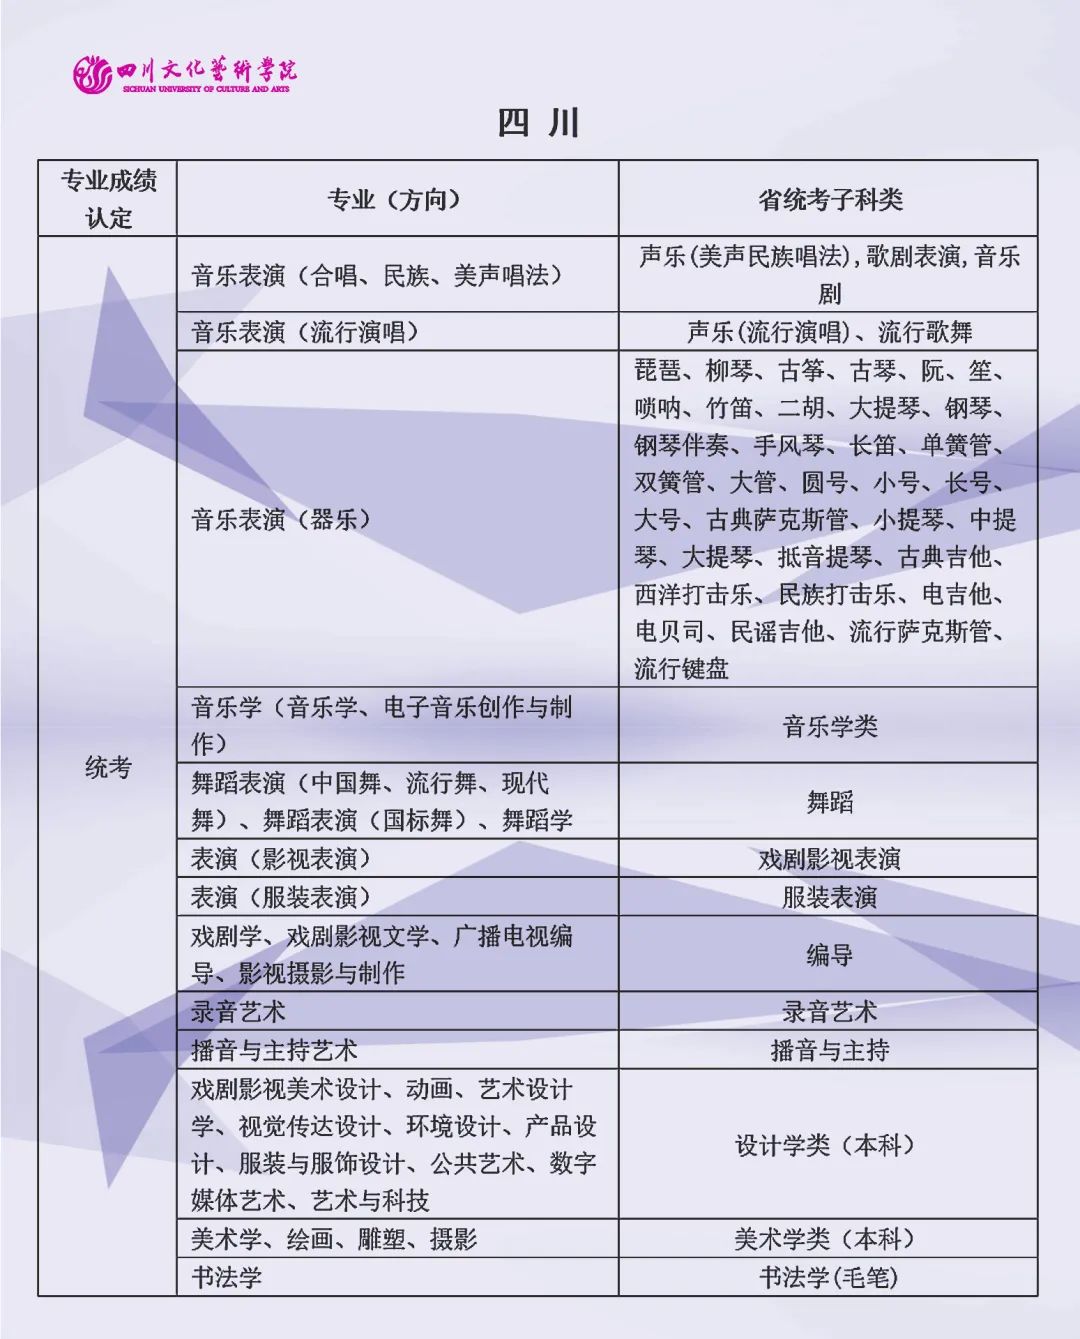 2022年四川文化艺术学院省外舞蹈表演（中国舞、流行舞、现代舞）专业校考成绩合格状态查询公告